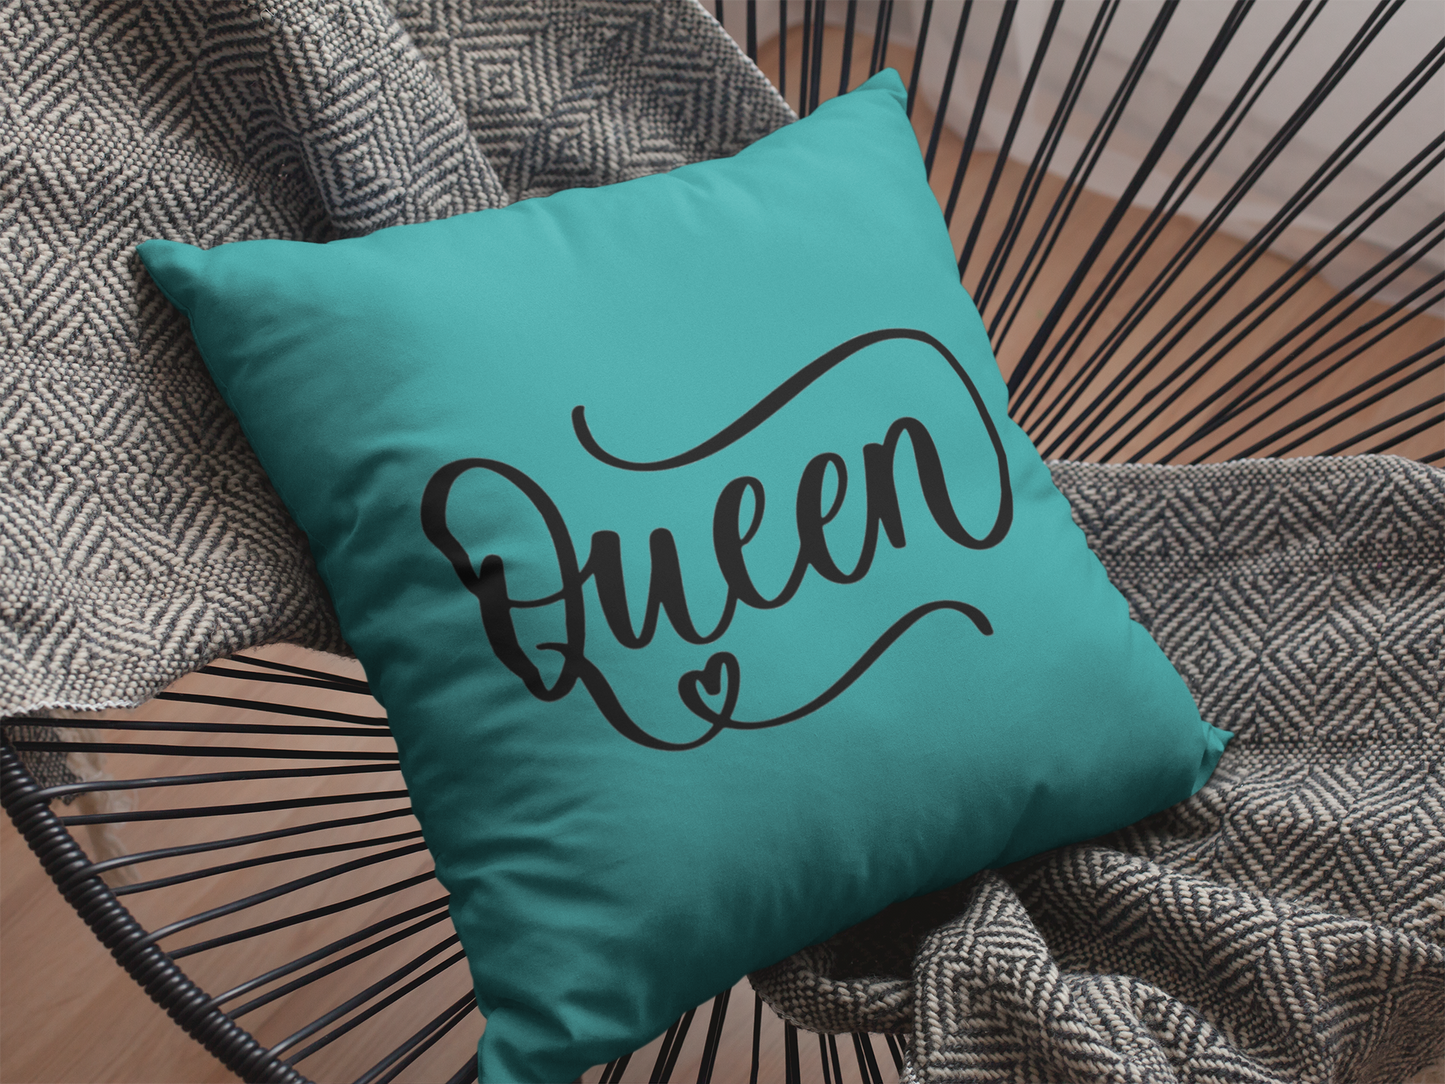 Queen Printed Cushion